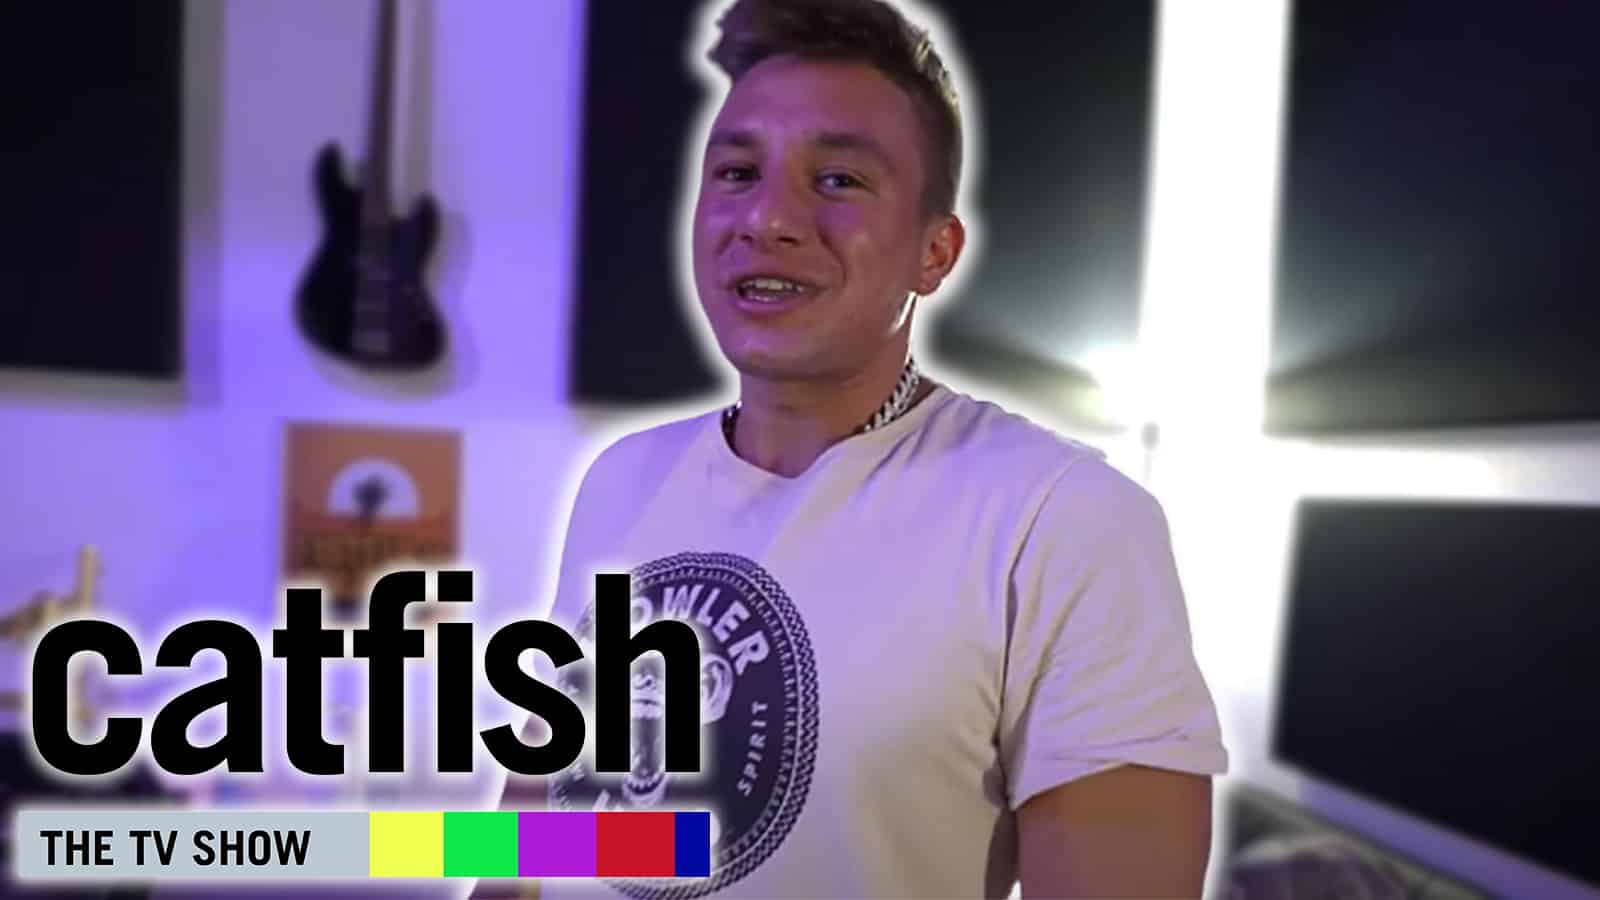 SteveWillDoit to appear on CatFish MTV